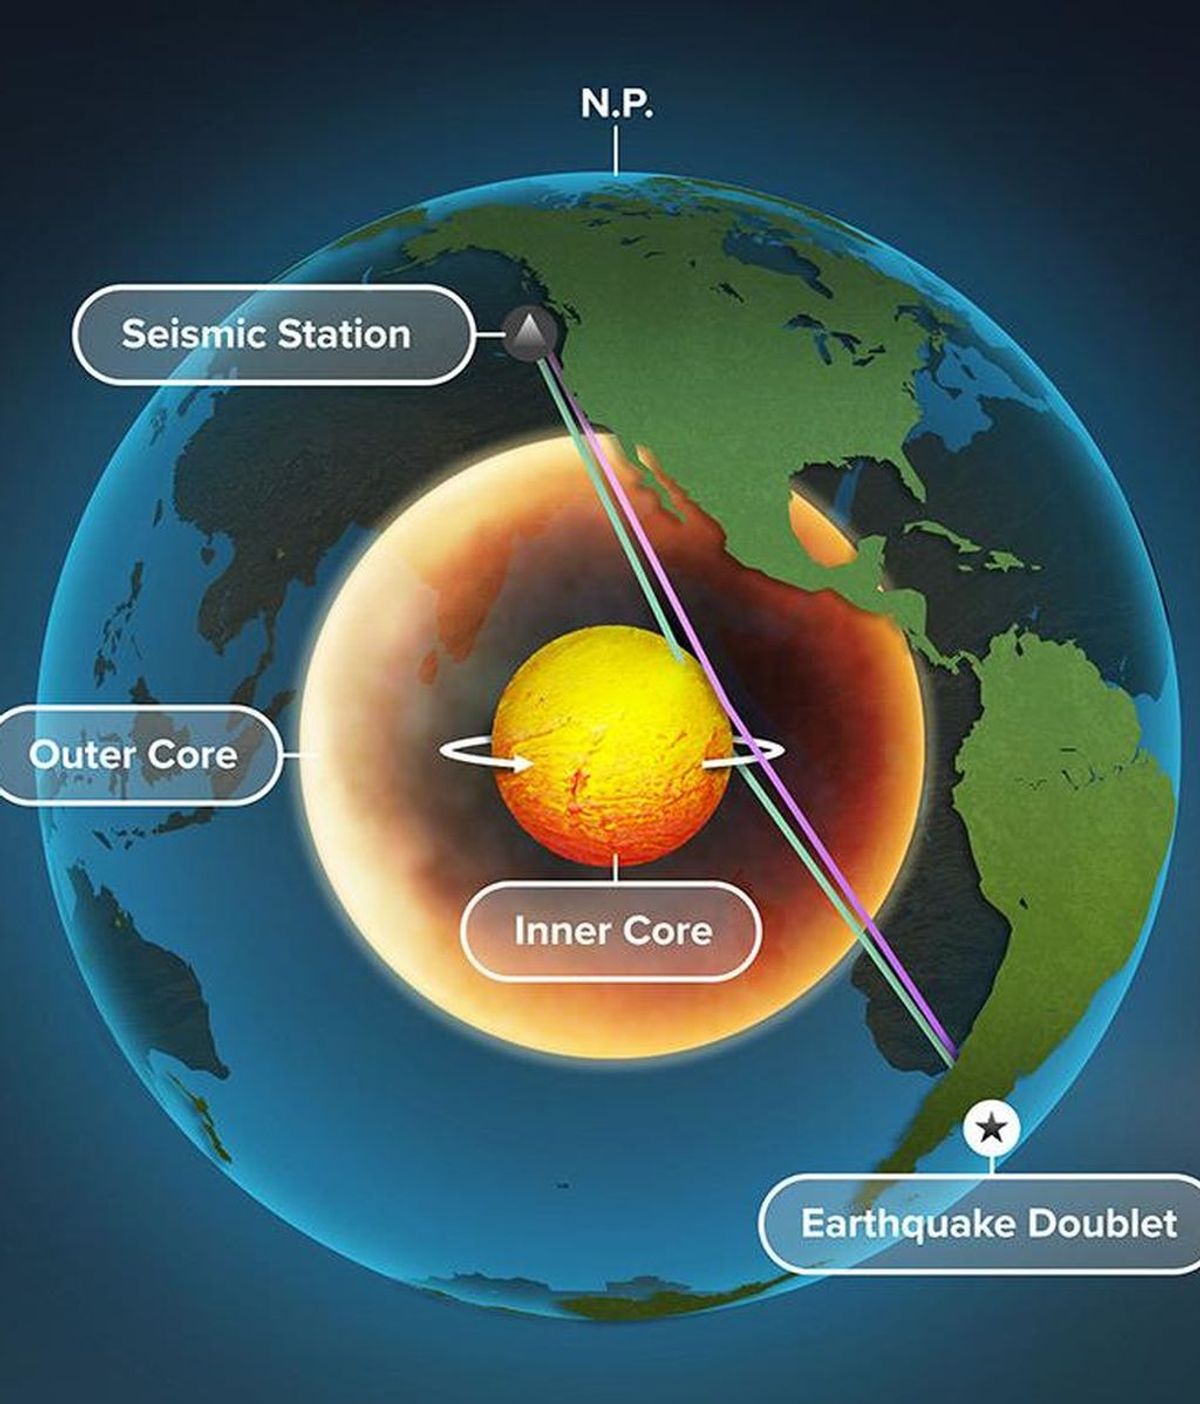 El núcleo interno de la Tierra está girando según revelan las señales sísmicas